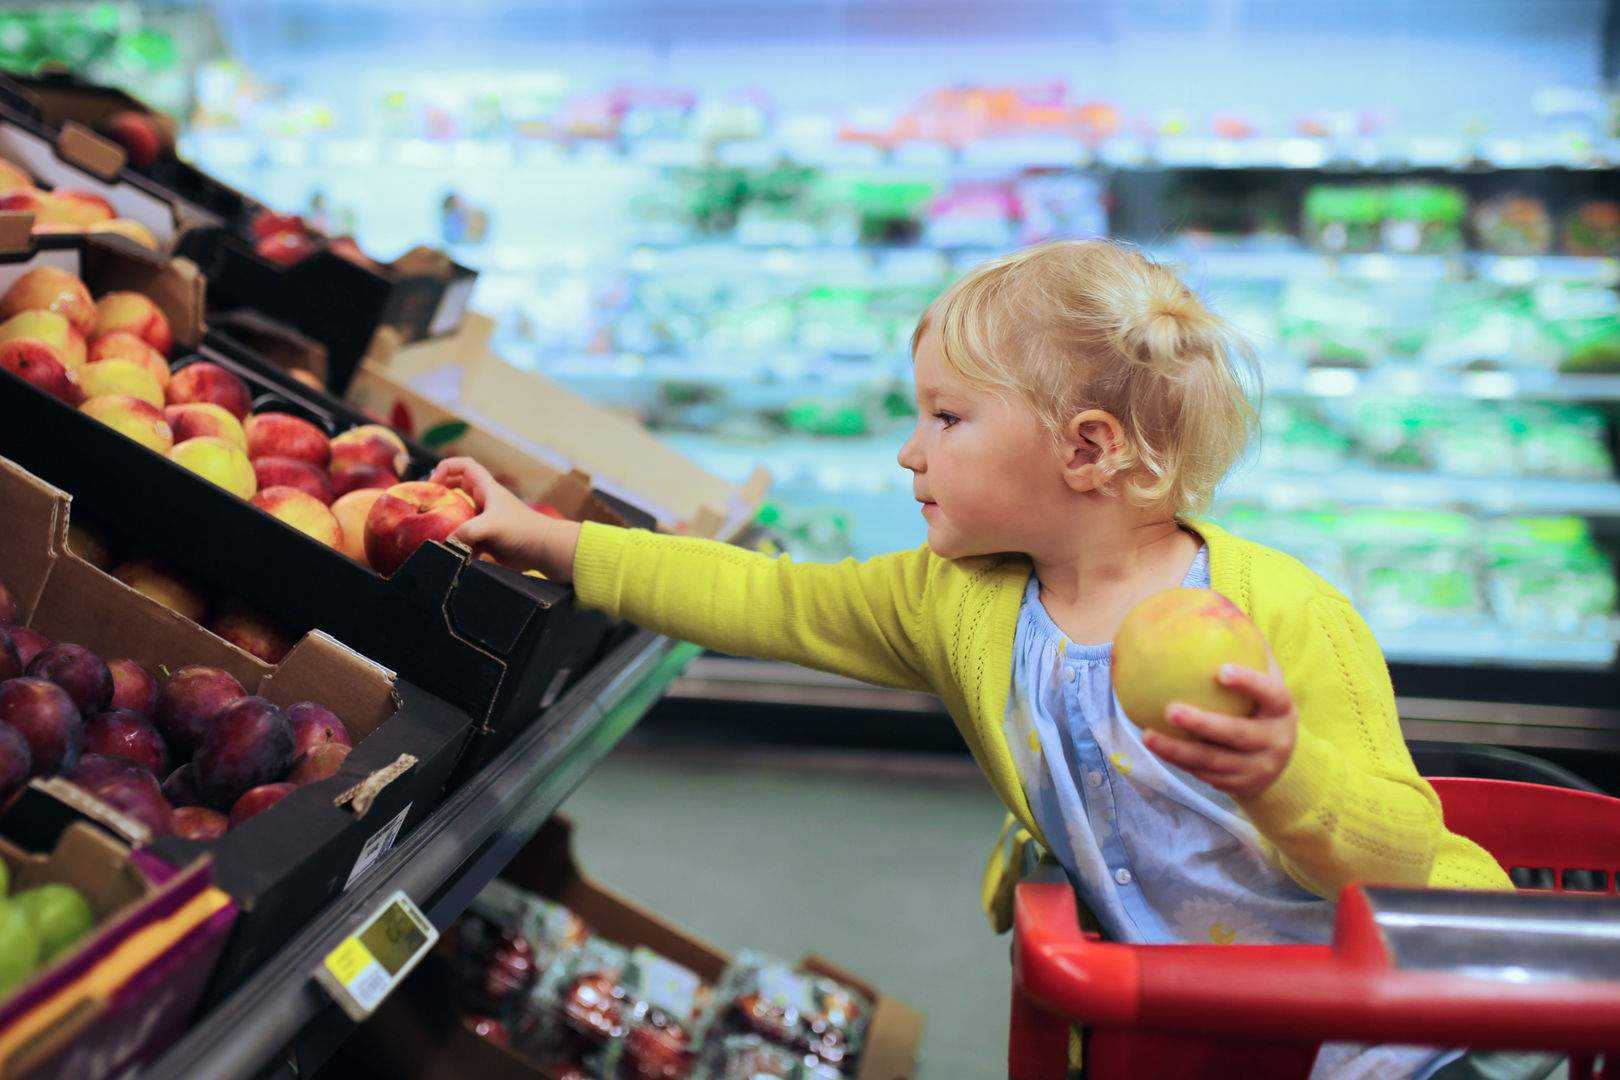 Сегодня 10 лет как мы купили. Ребенок в магазине. Супермаркет для детей. Поход в магазин. Продукты в супермаркете.